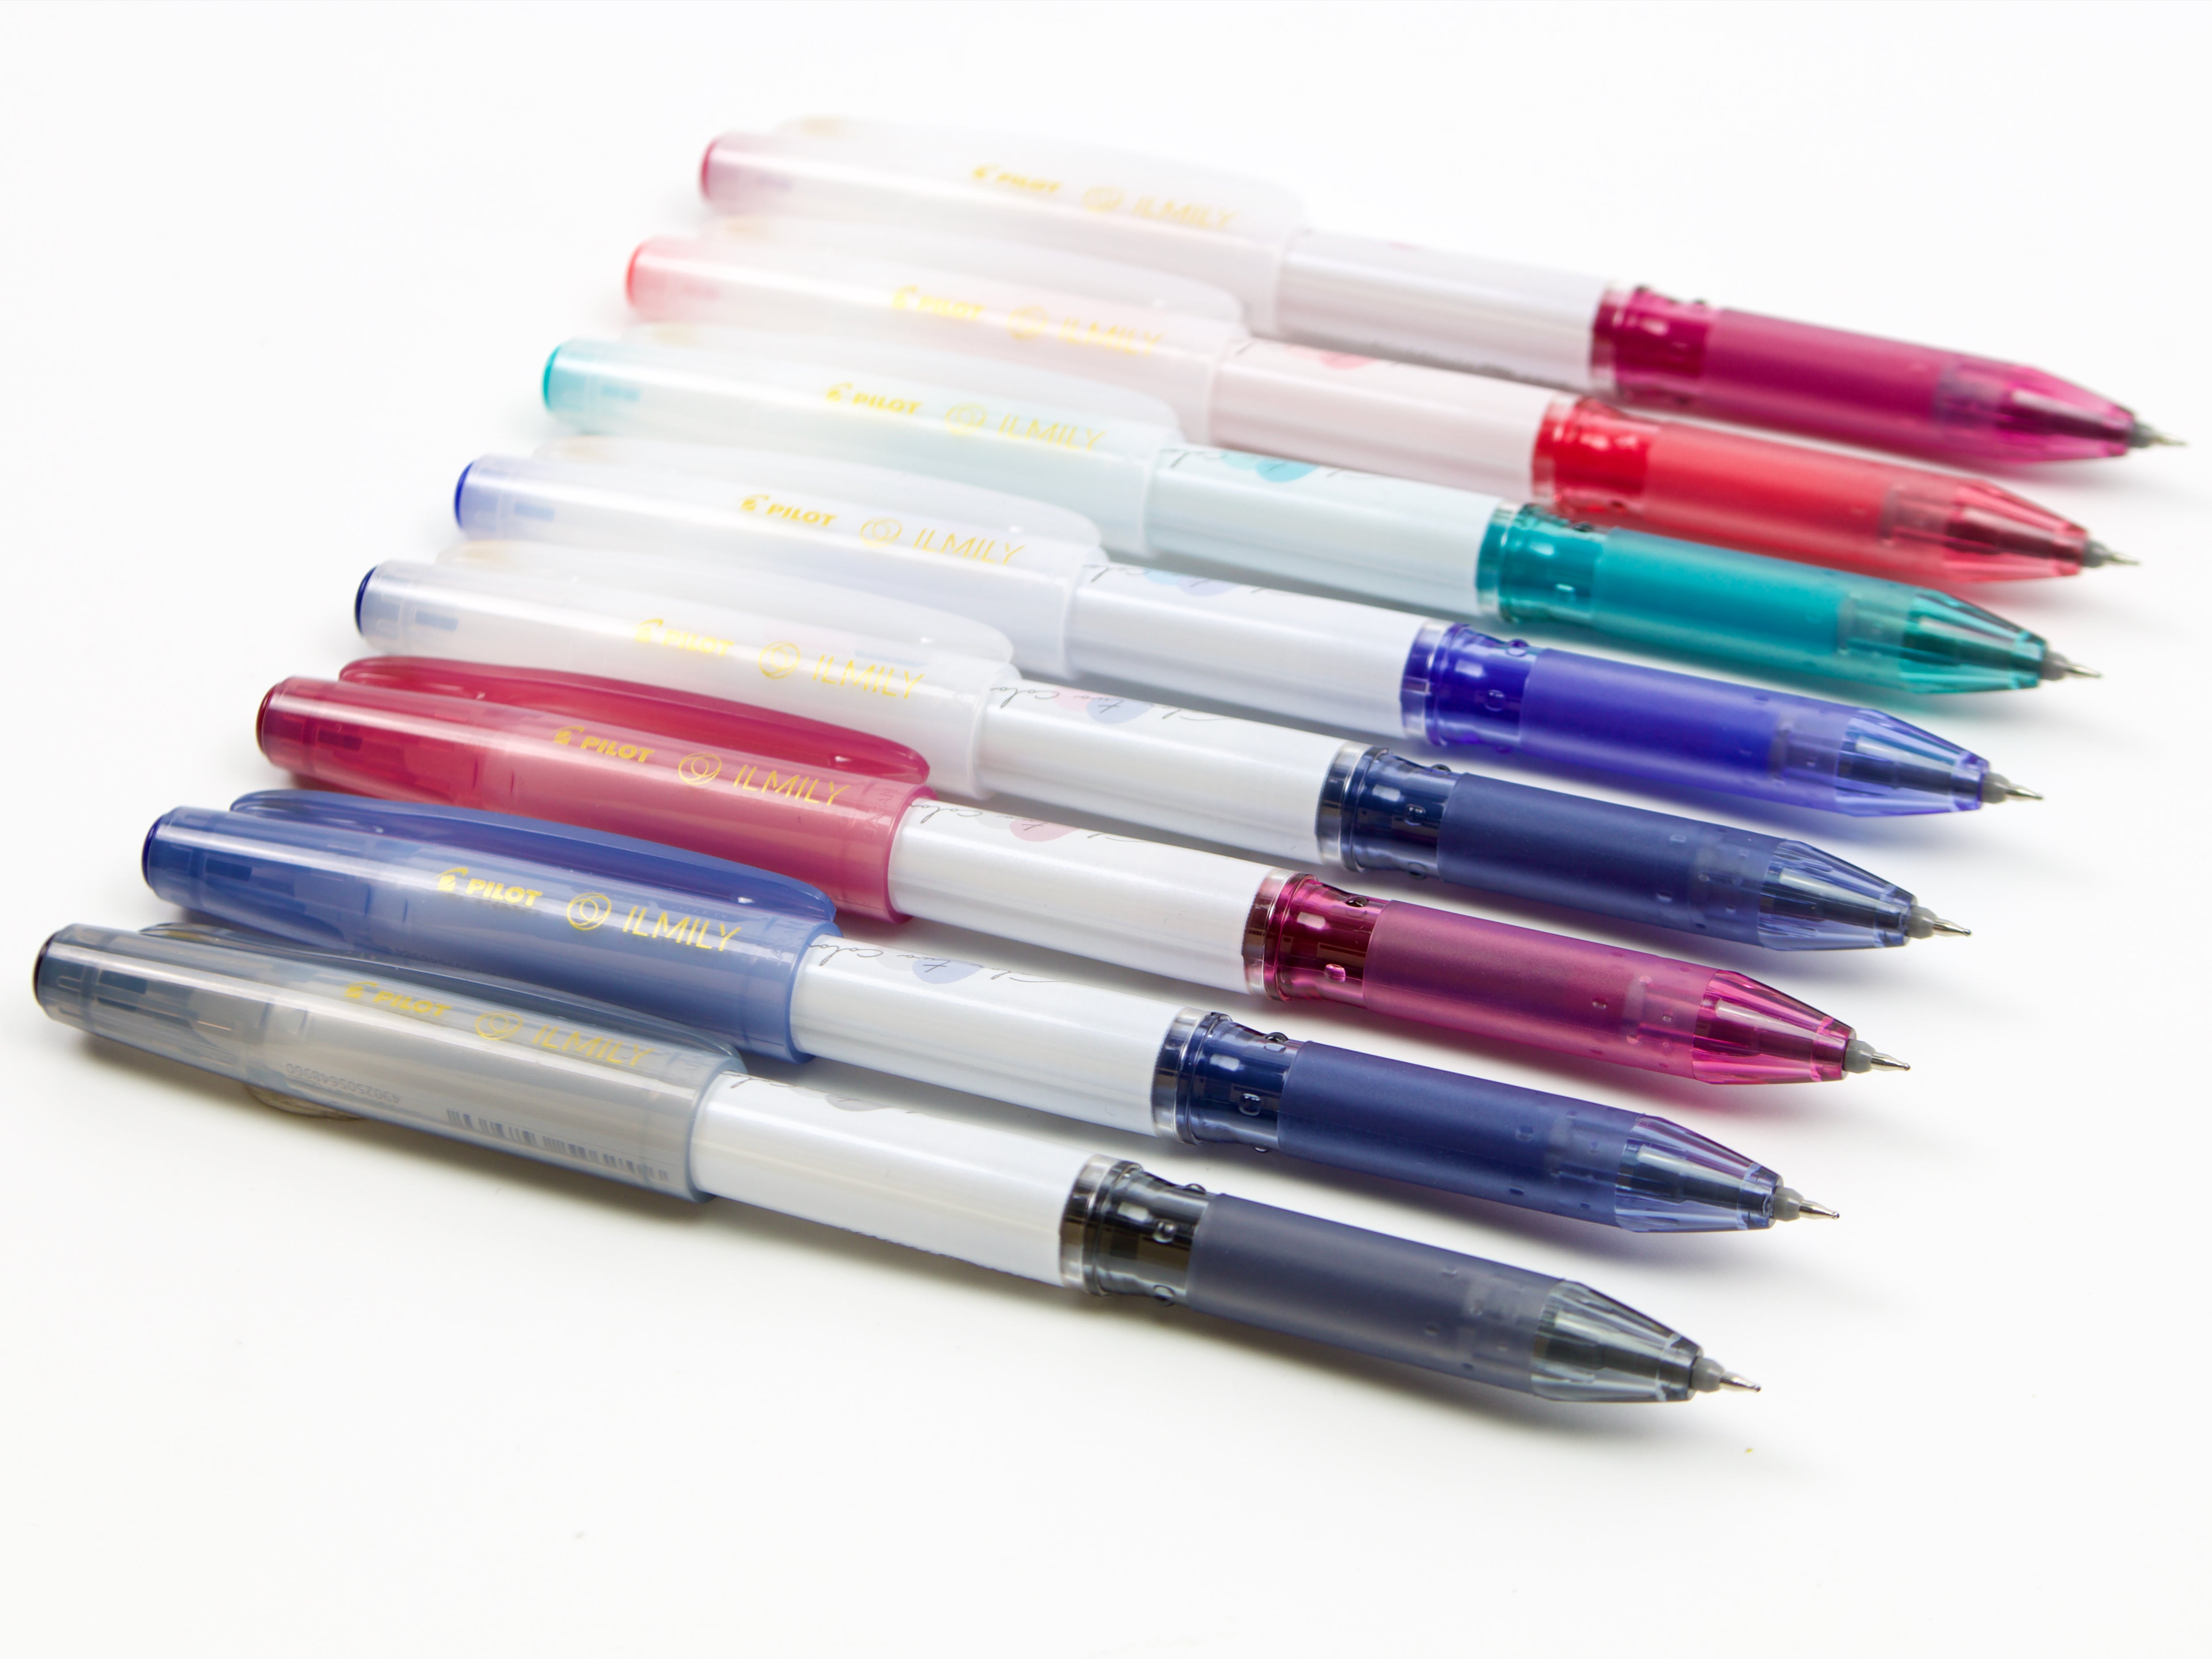 Color blending “Chameleon Pens” are the hottest new art items trending in  Japan